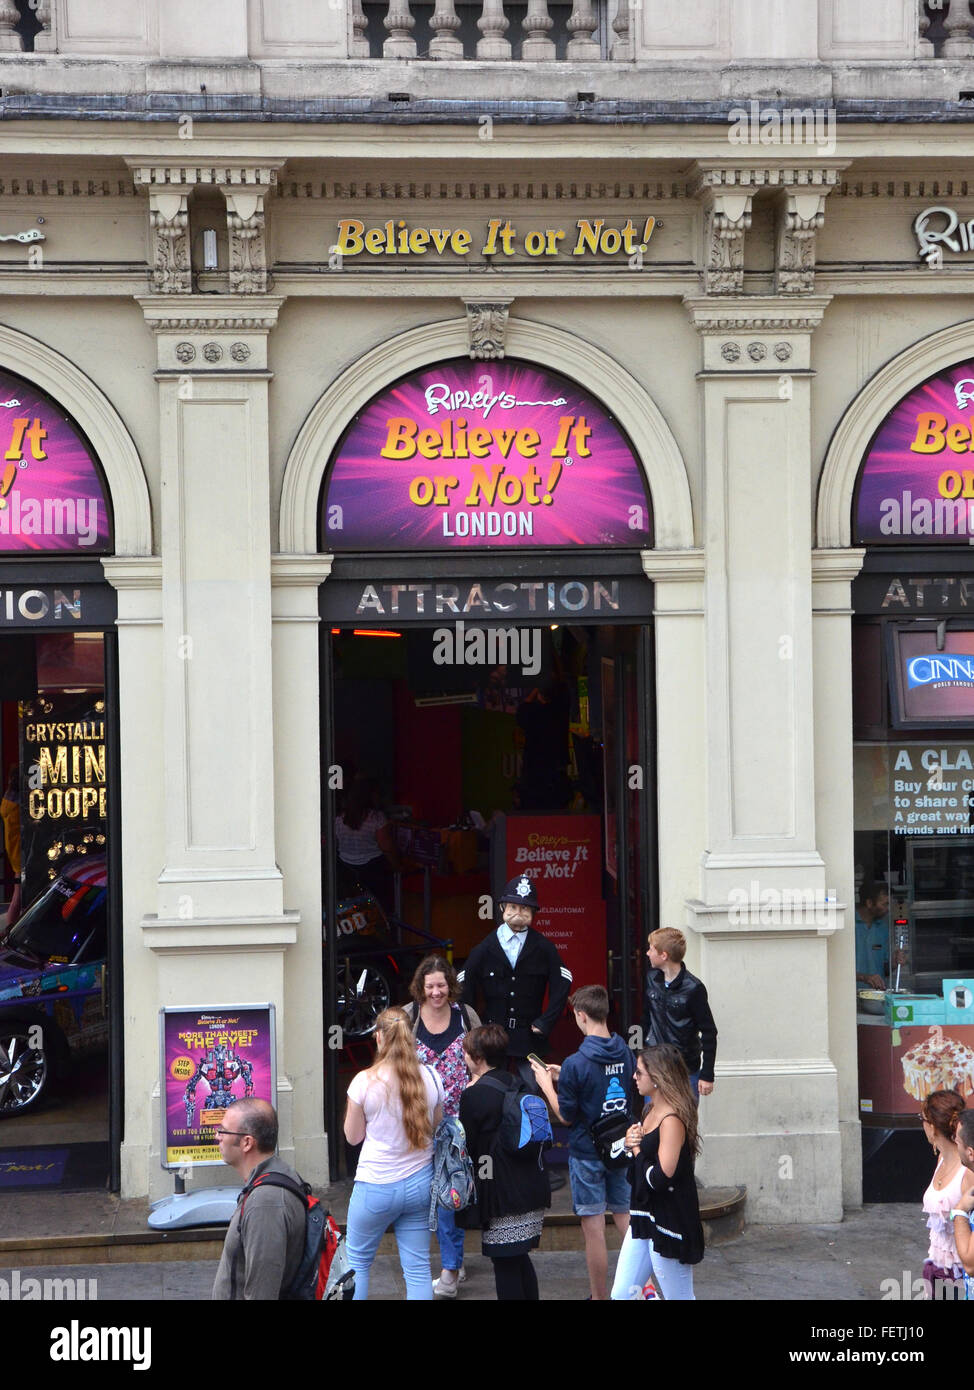 LONDON - AUGUST 6: Ripleys glauben Ir oder nicht! London, gezeigt am 6. August 2015, umfasst mehr als 700 Artefakte. Stockfoto